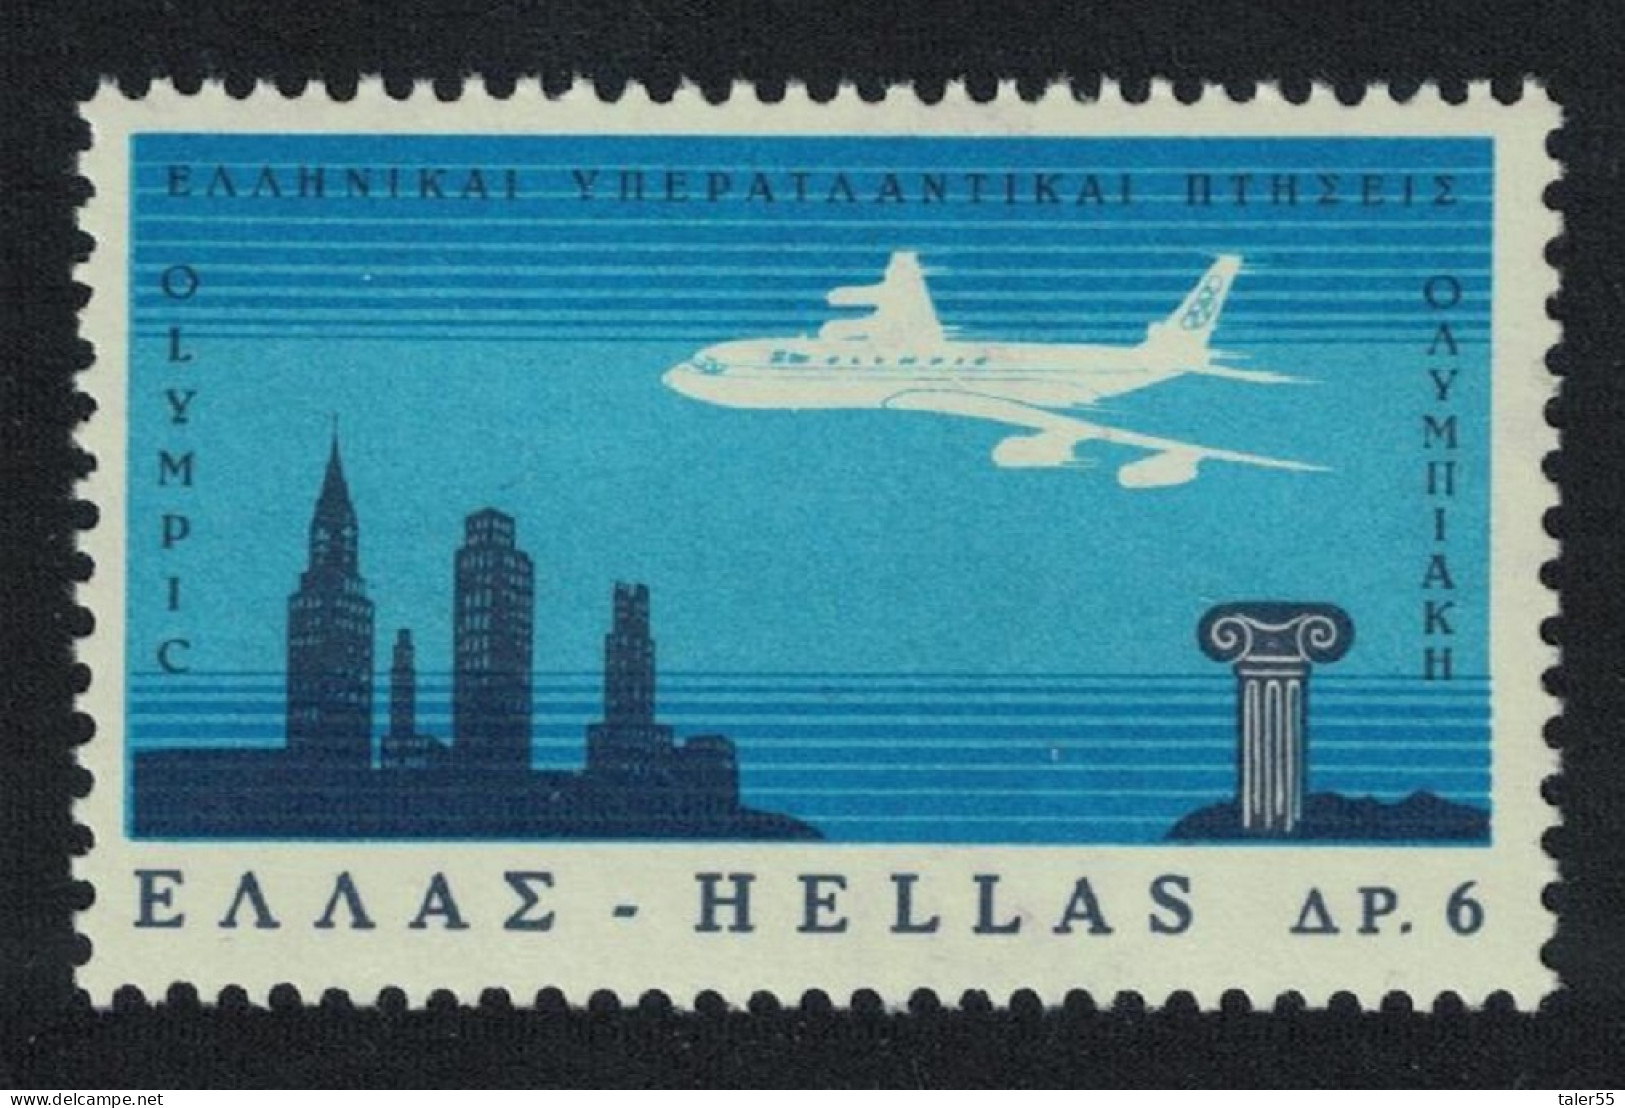 Greece Aircraft Greek Airways Transatlantic Flights 1966 MNH SG#1018 MI#912 Sc#859 - Ongebruikt